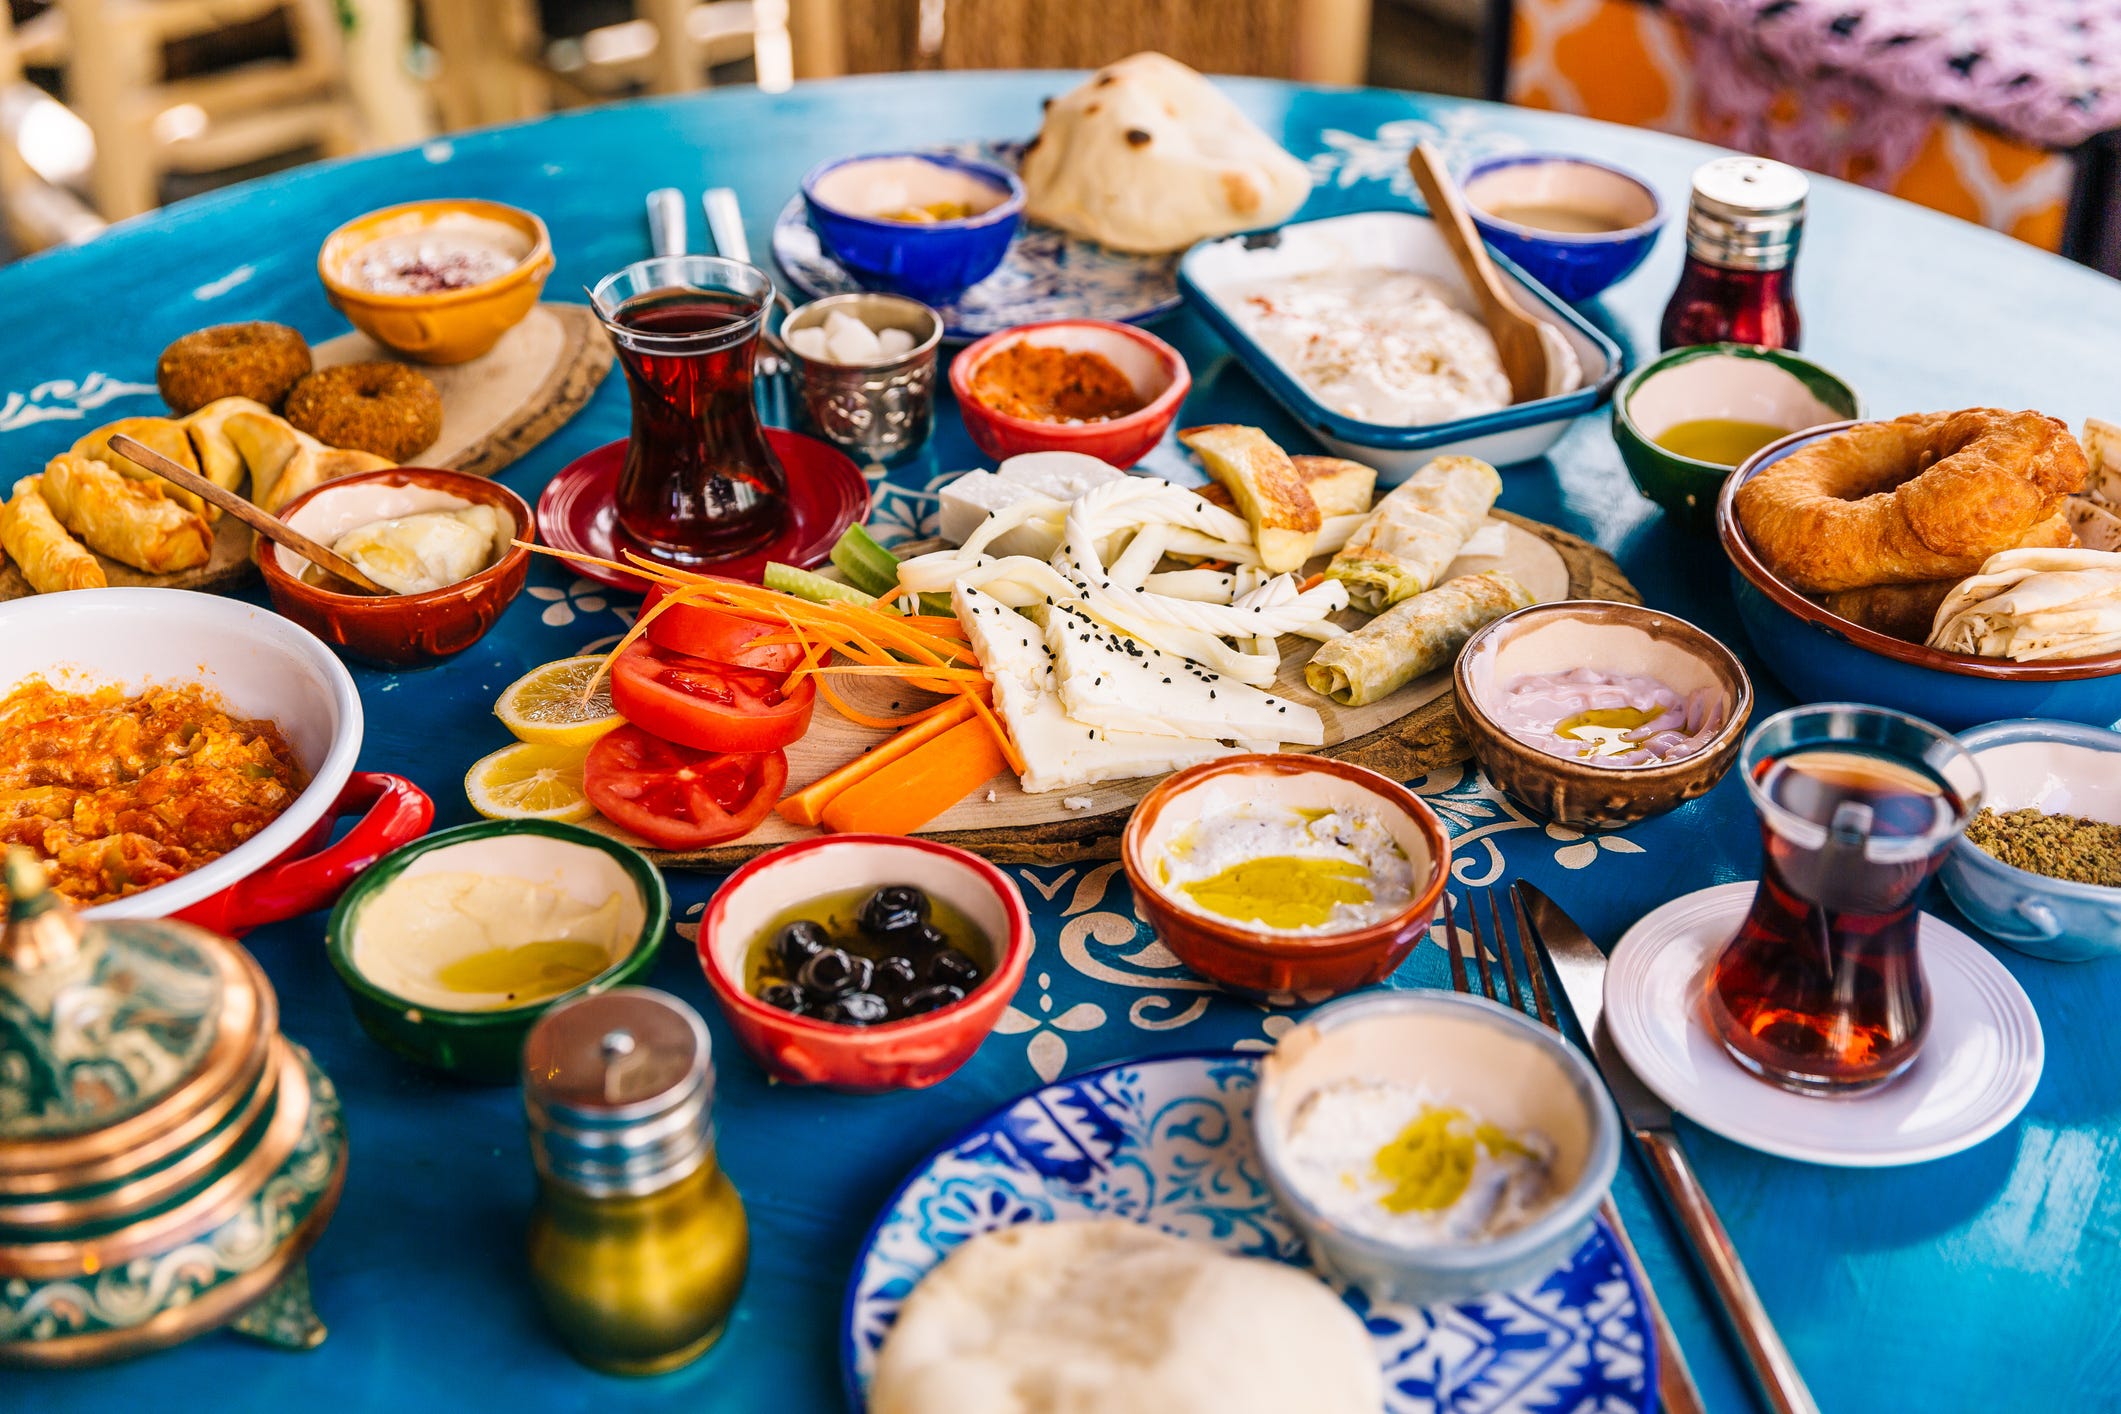 meine familie hält sich seit jahren an die mediterrane ernährung: 7 tipps, wie auch ihr das schaffen könnt